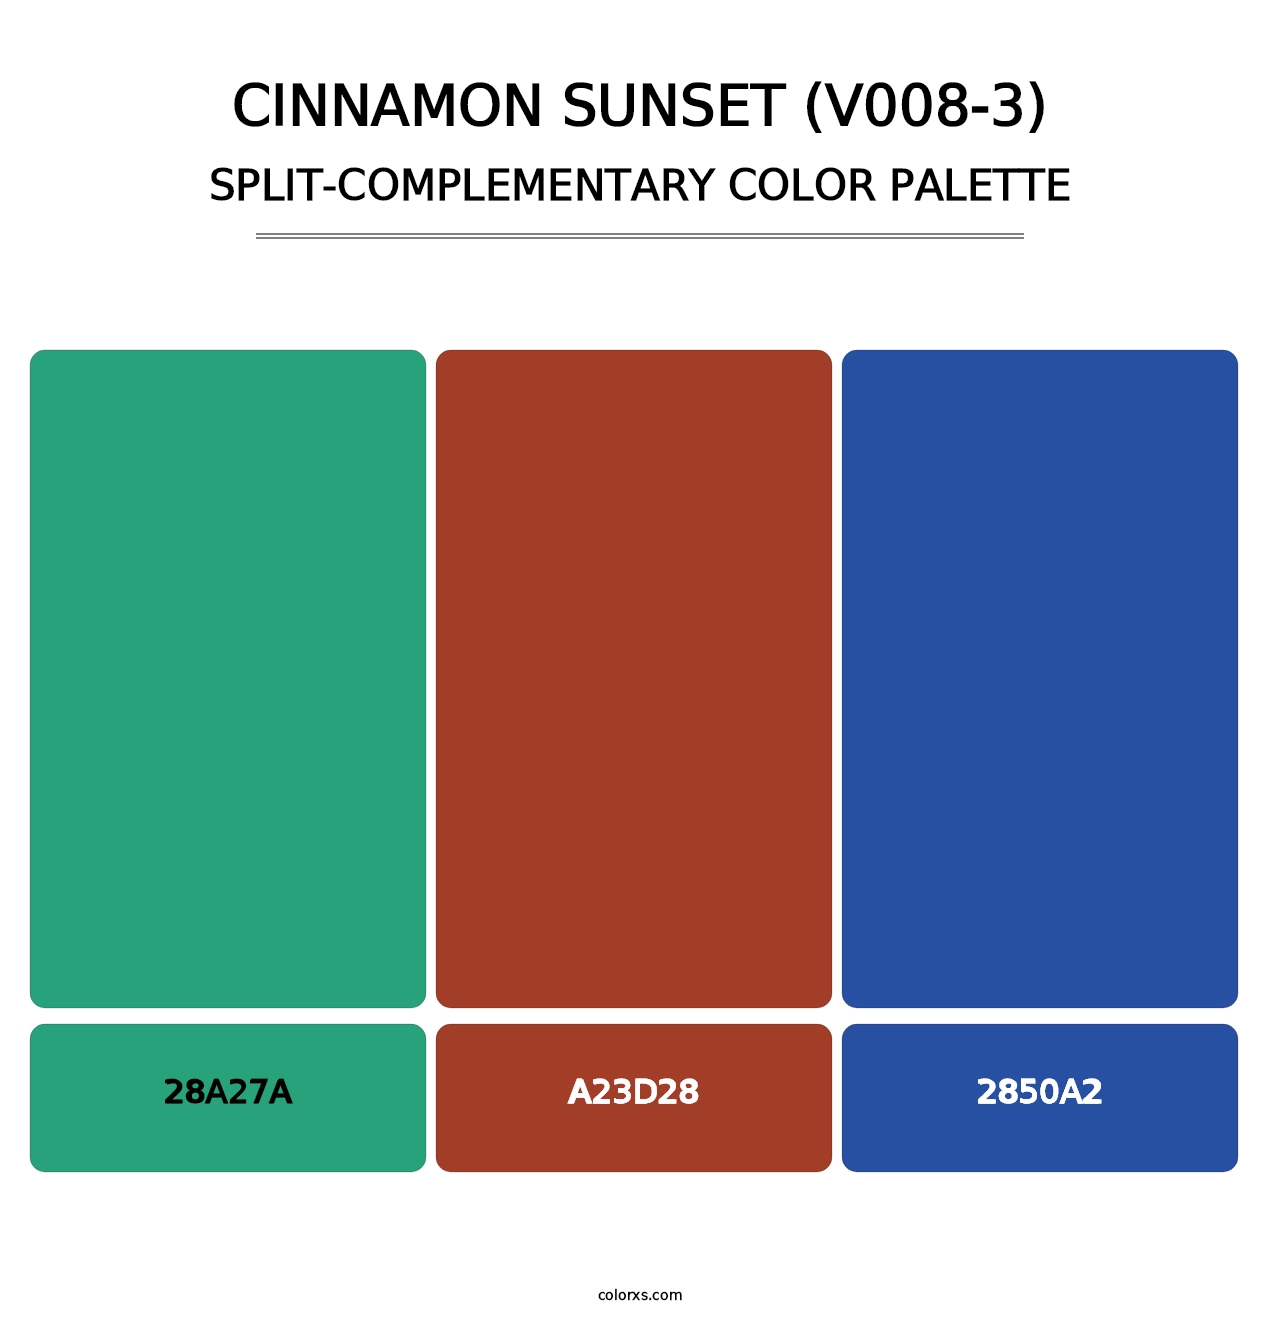 Cinnamon Sunset (V008-3) - Split-Complementary Color Palette